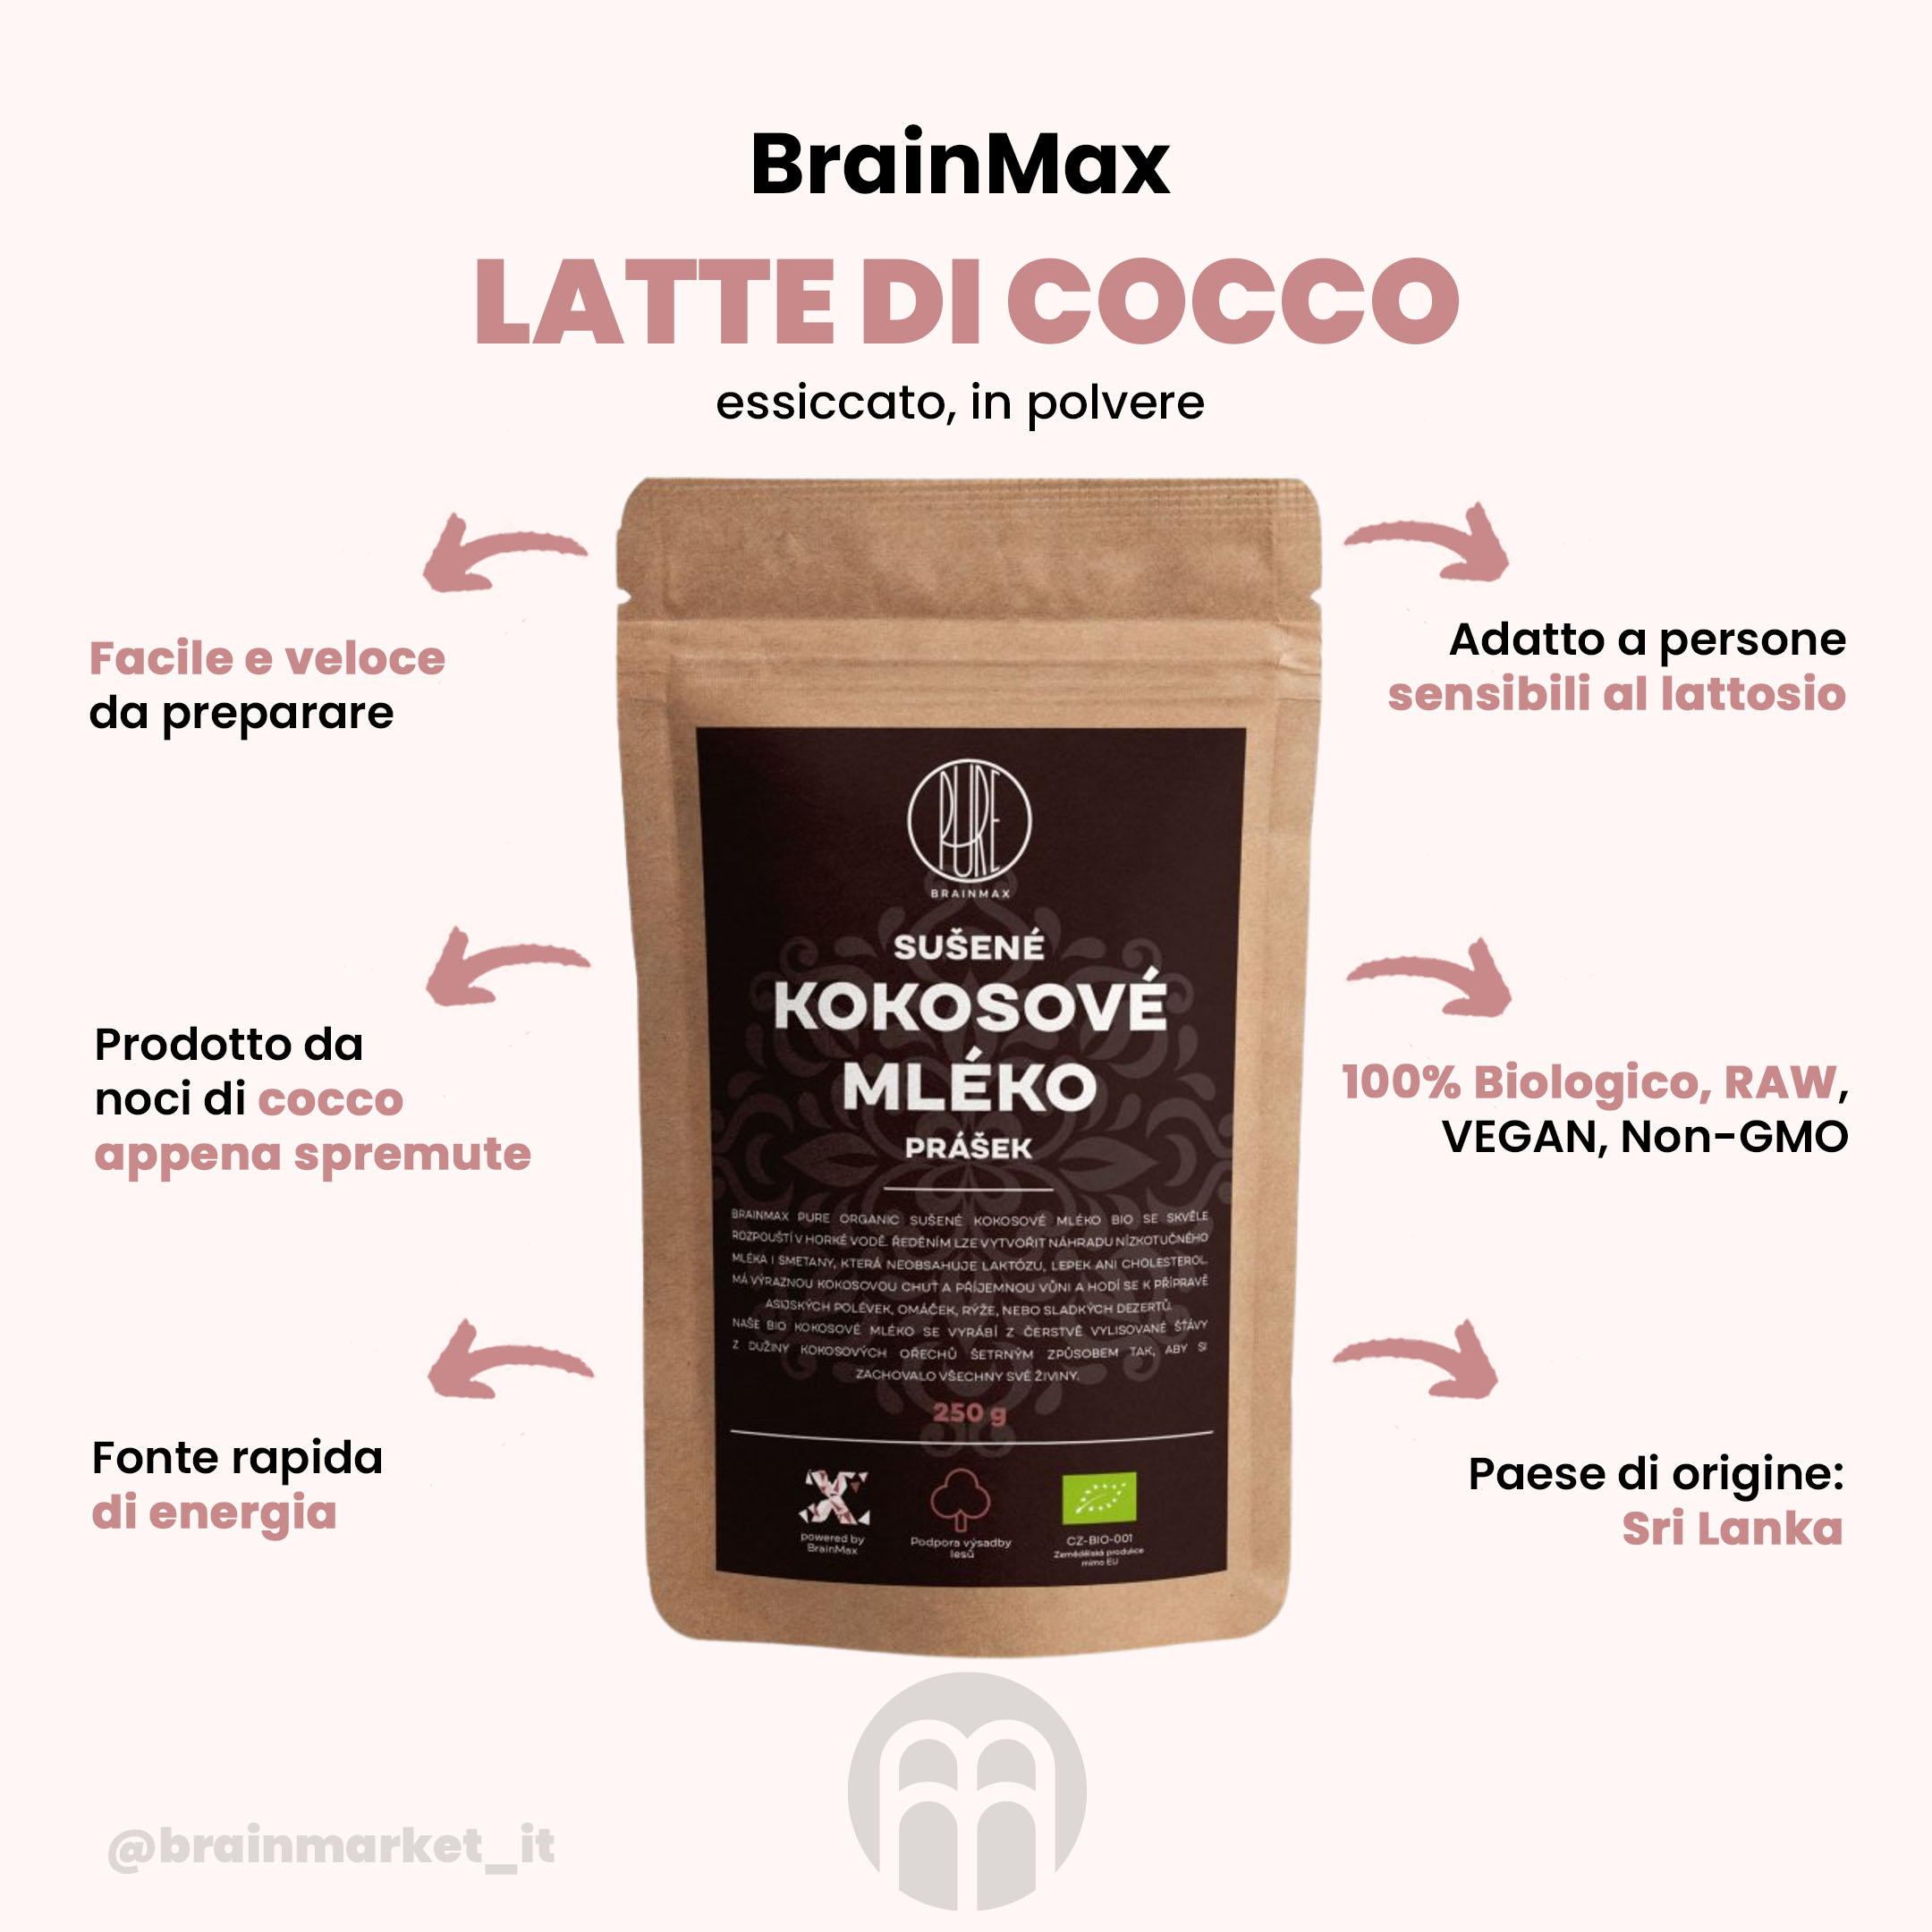 BrainMax Latte di cocco puro BIO in polvere, 250 g - BrainMarket.cz